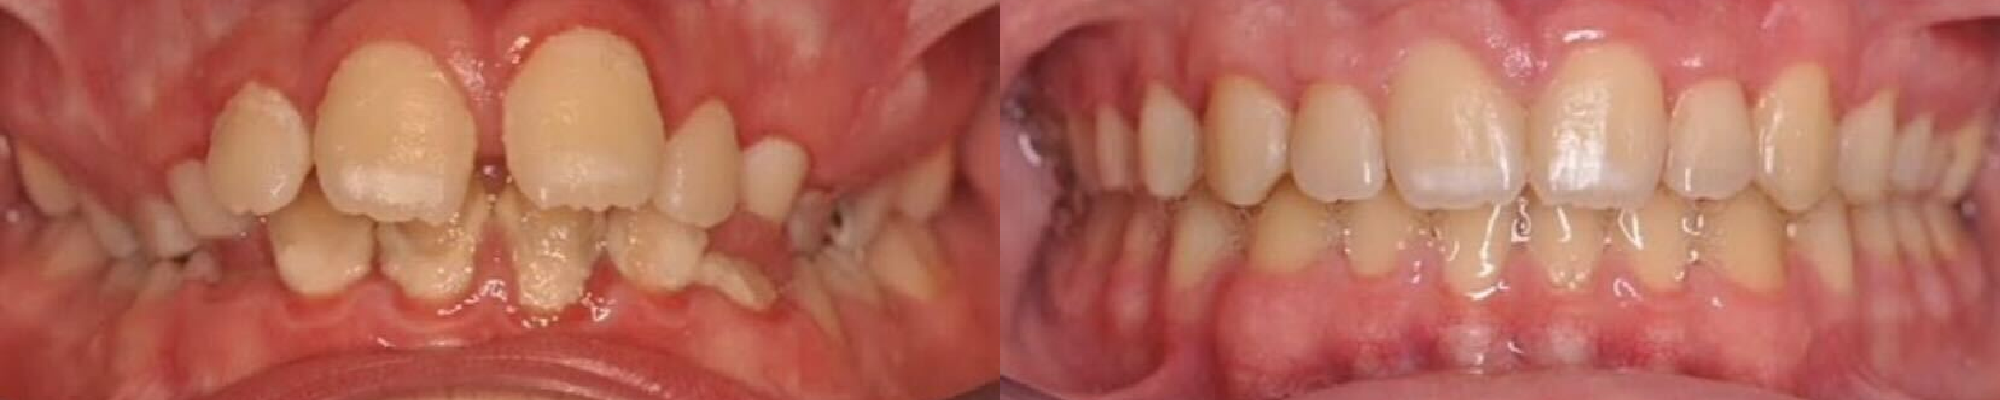 Ortodoncia con brackets y mucho amor para resolver mordida y enfermedad periodontal severa